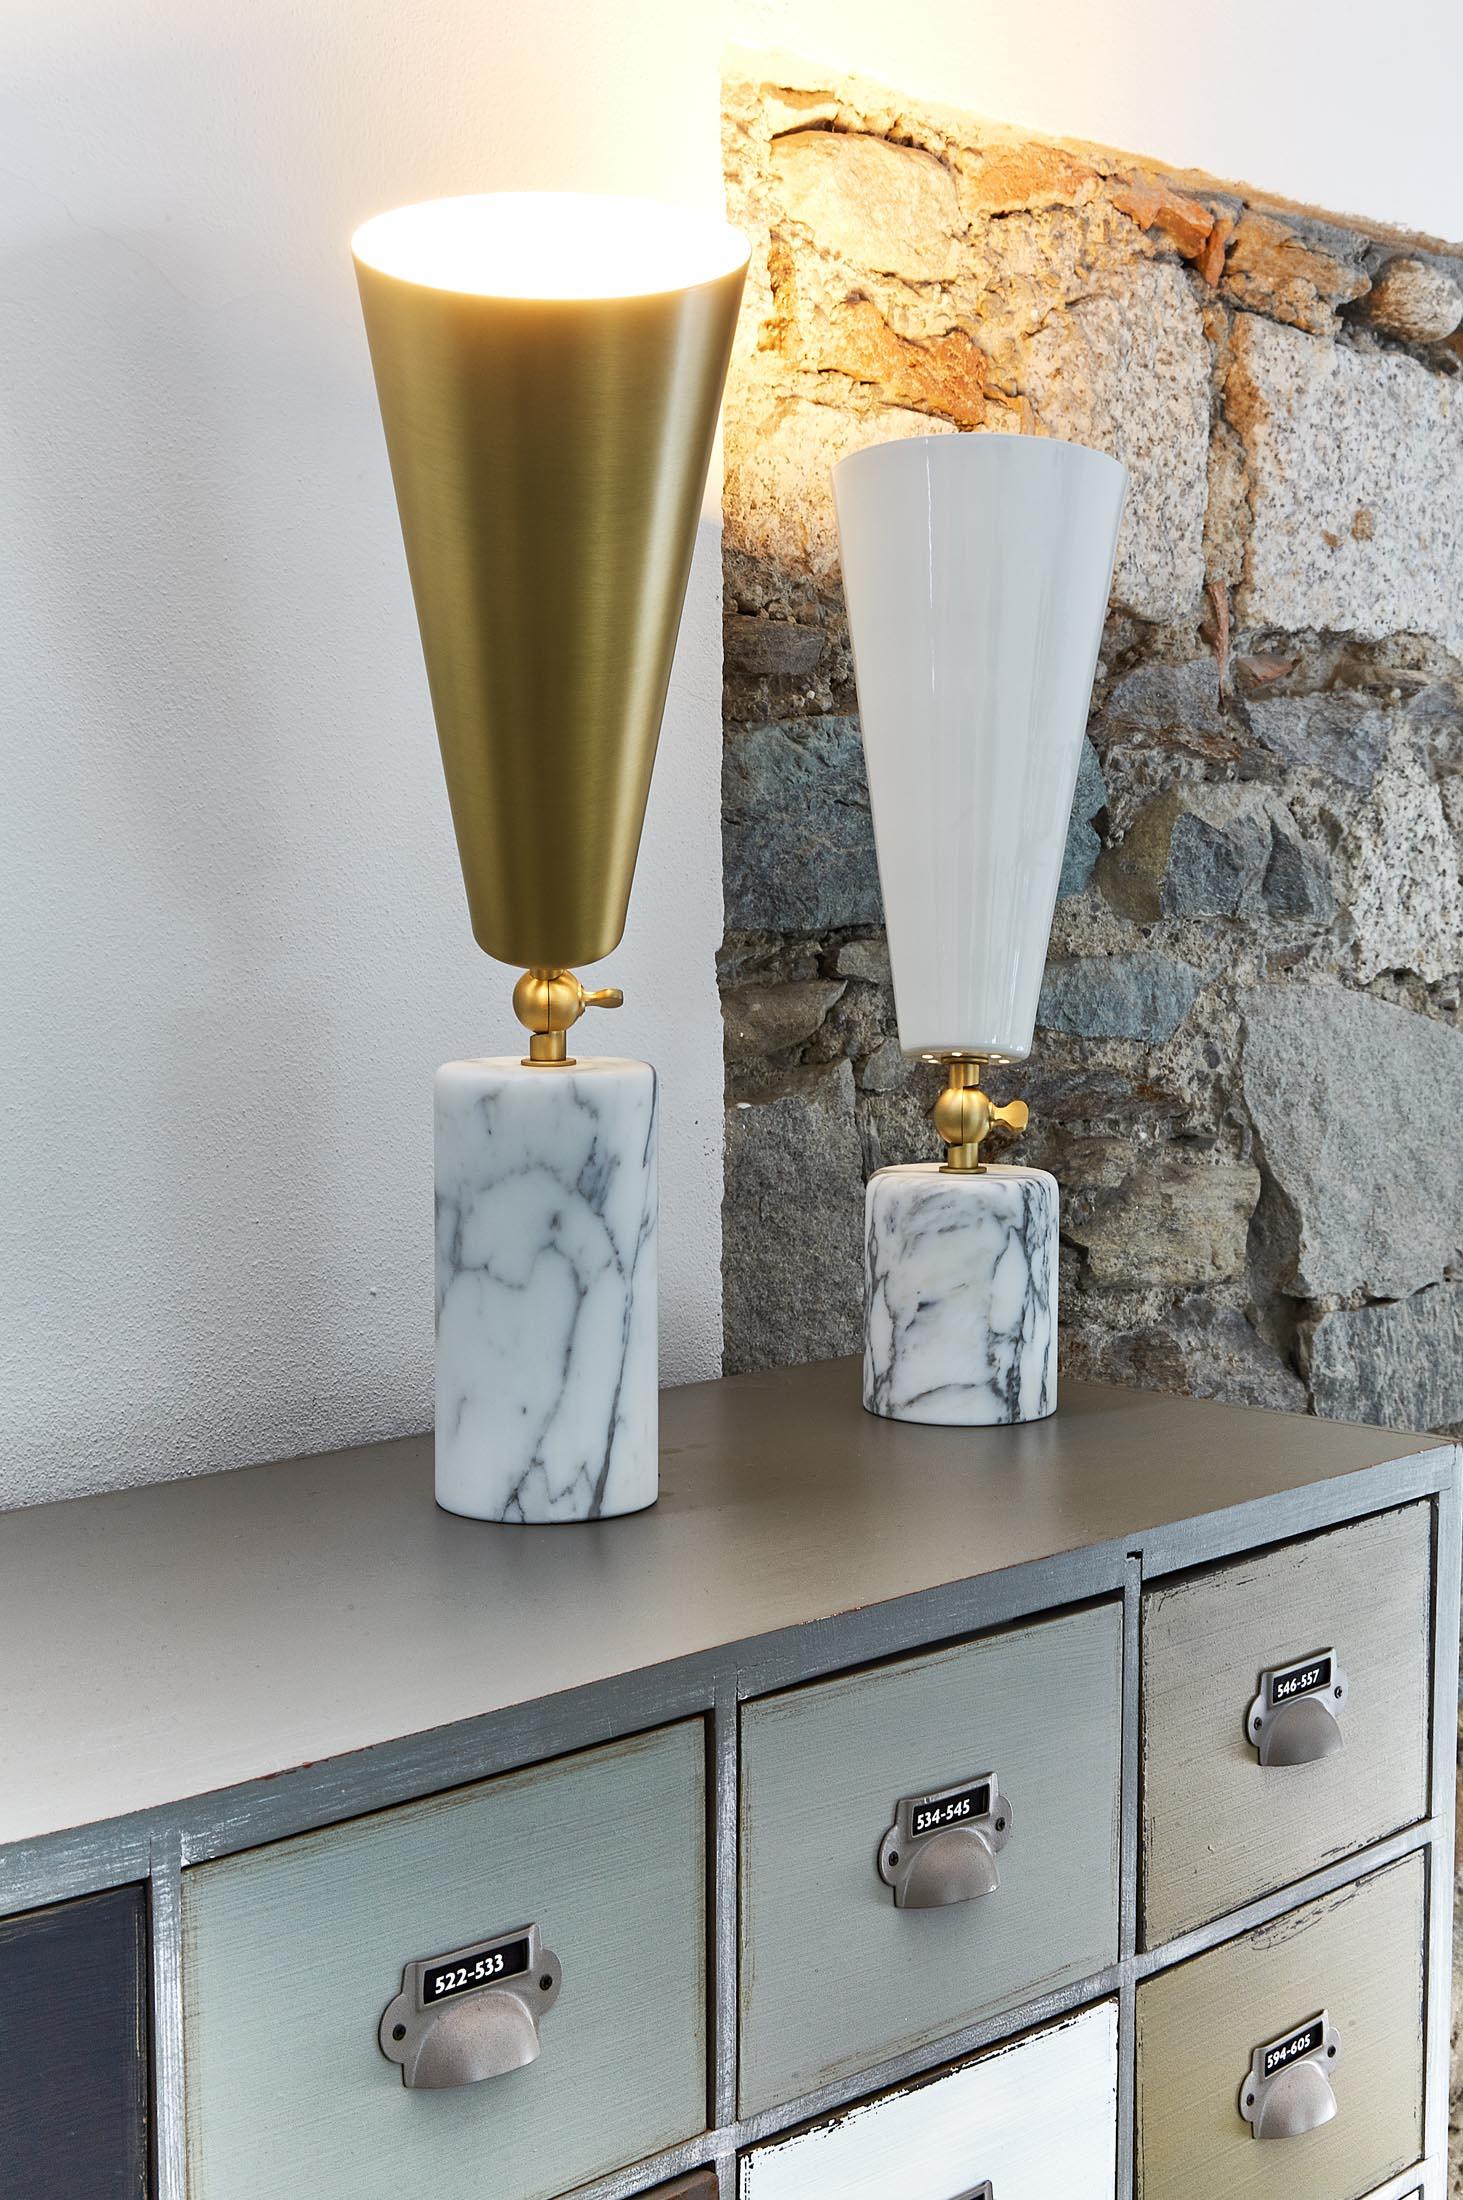 Tato Italia 'Vox' Table Lamp in Portoro Marble and Brass For Sale 2